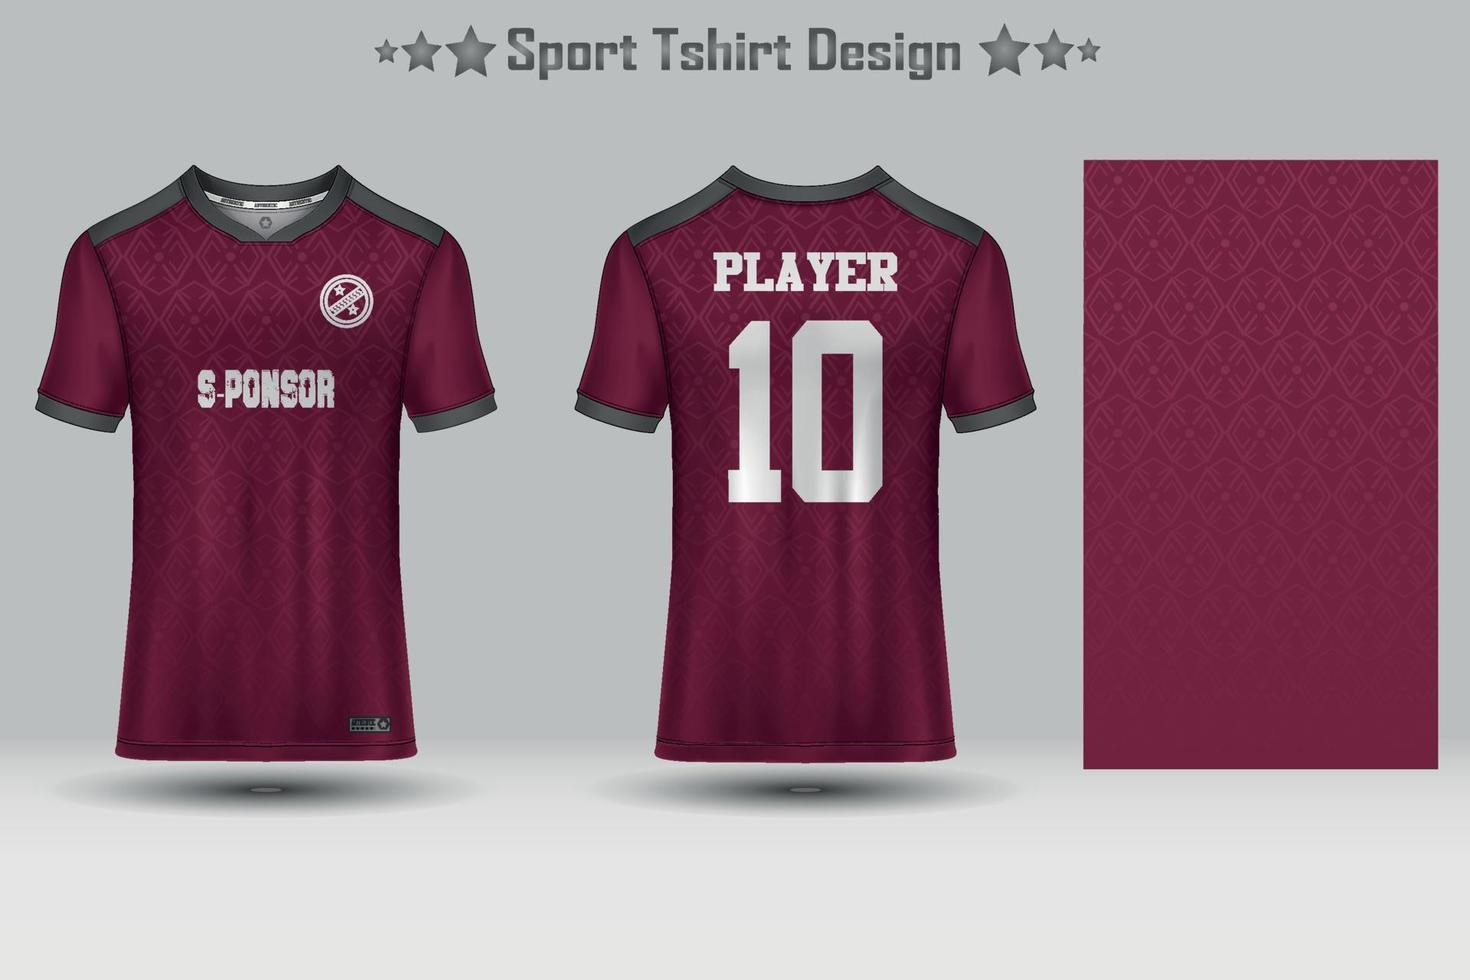 modelo de maquete de padrão geométrico de camisa de futebol abstrata design de camiseta esportiva vetor